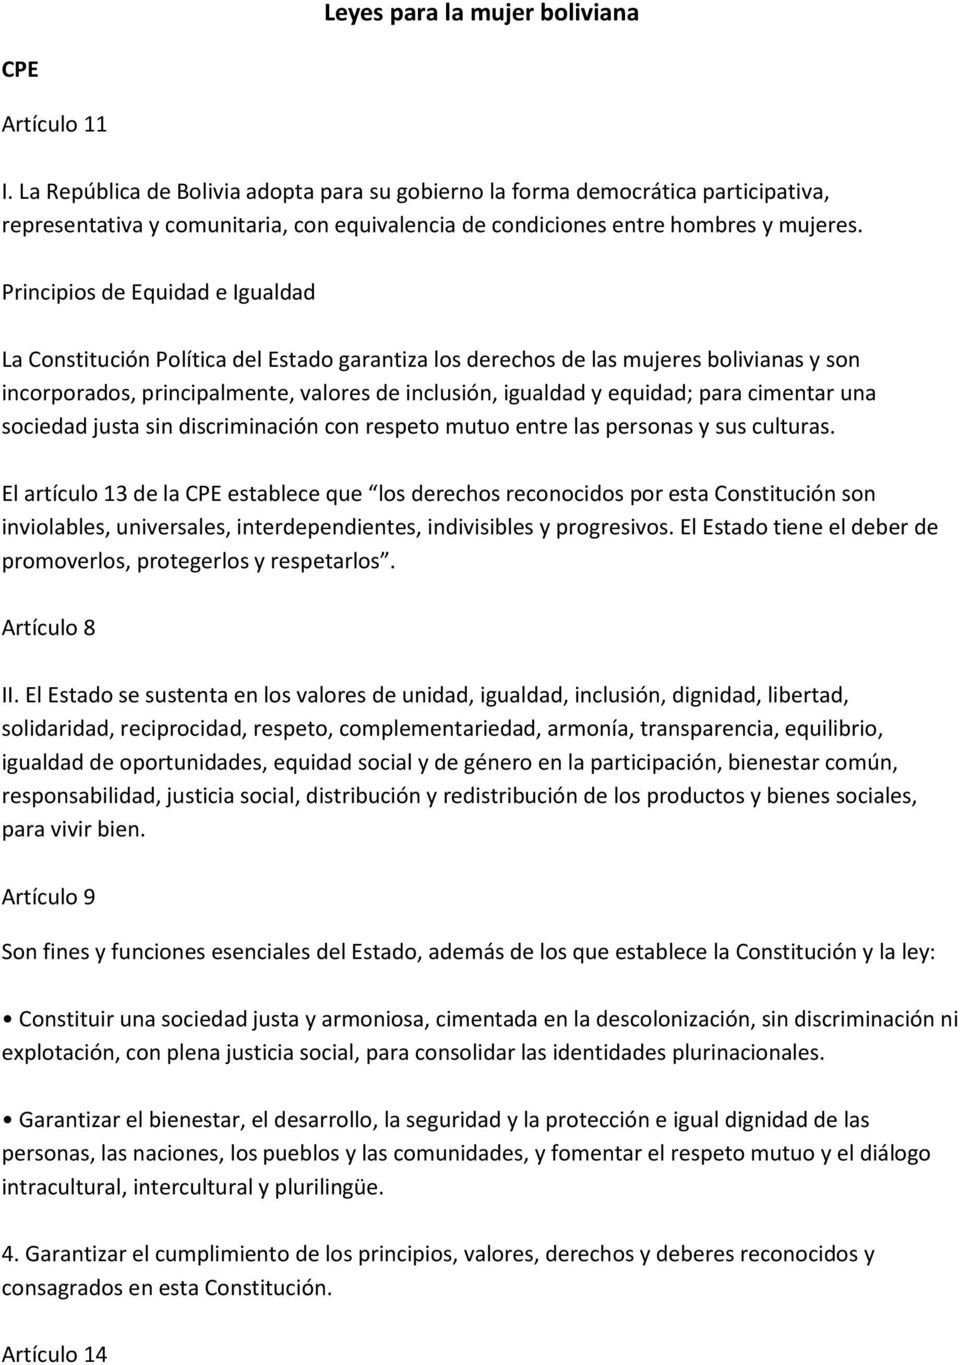 Principios de Equidad e Igualdad La Constitución Política del Estado garantiza los derechos de las mujeres bolivianas y son incorporados, principalmente, valores de inclusión, igualdad y equidad;